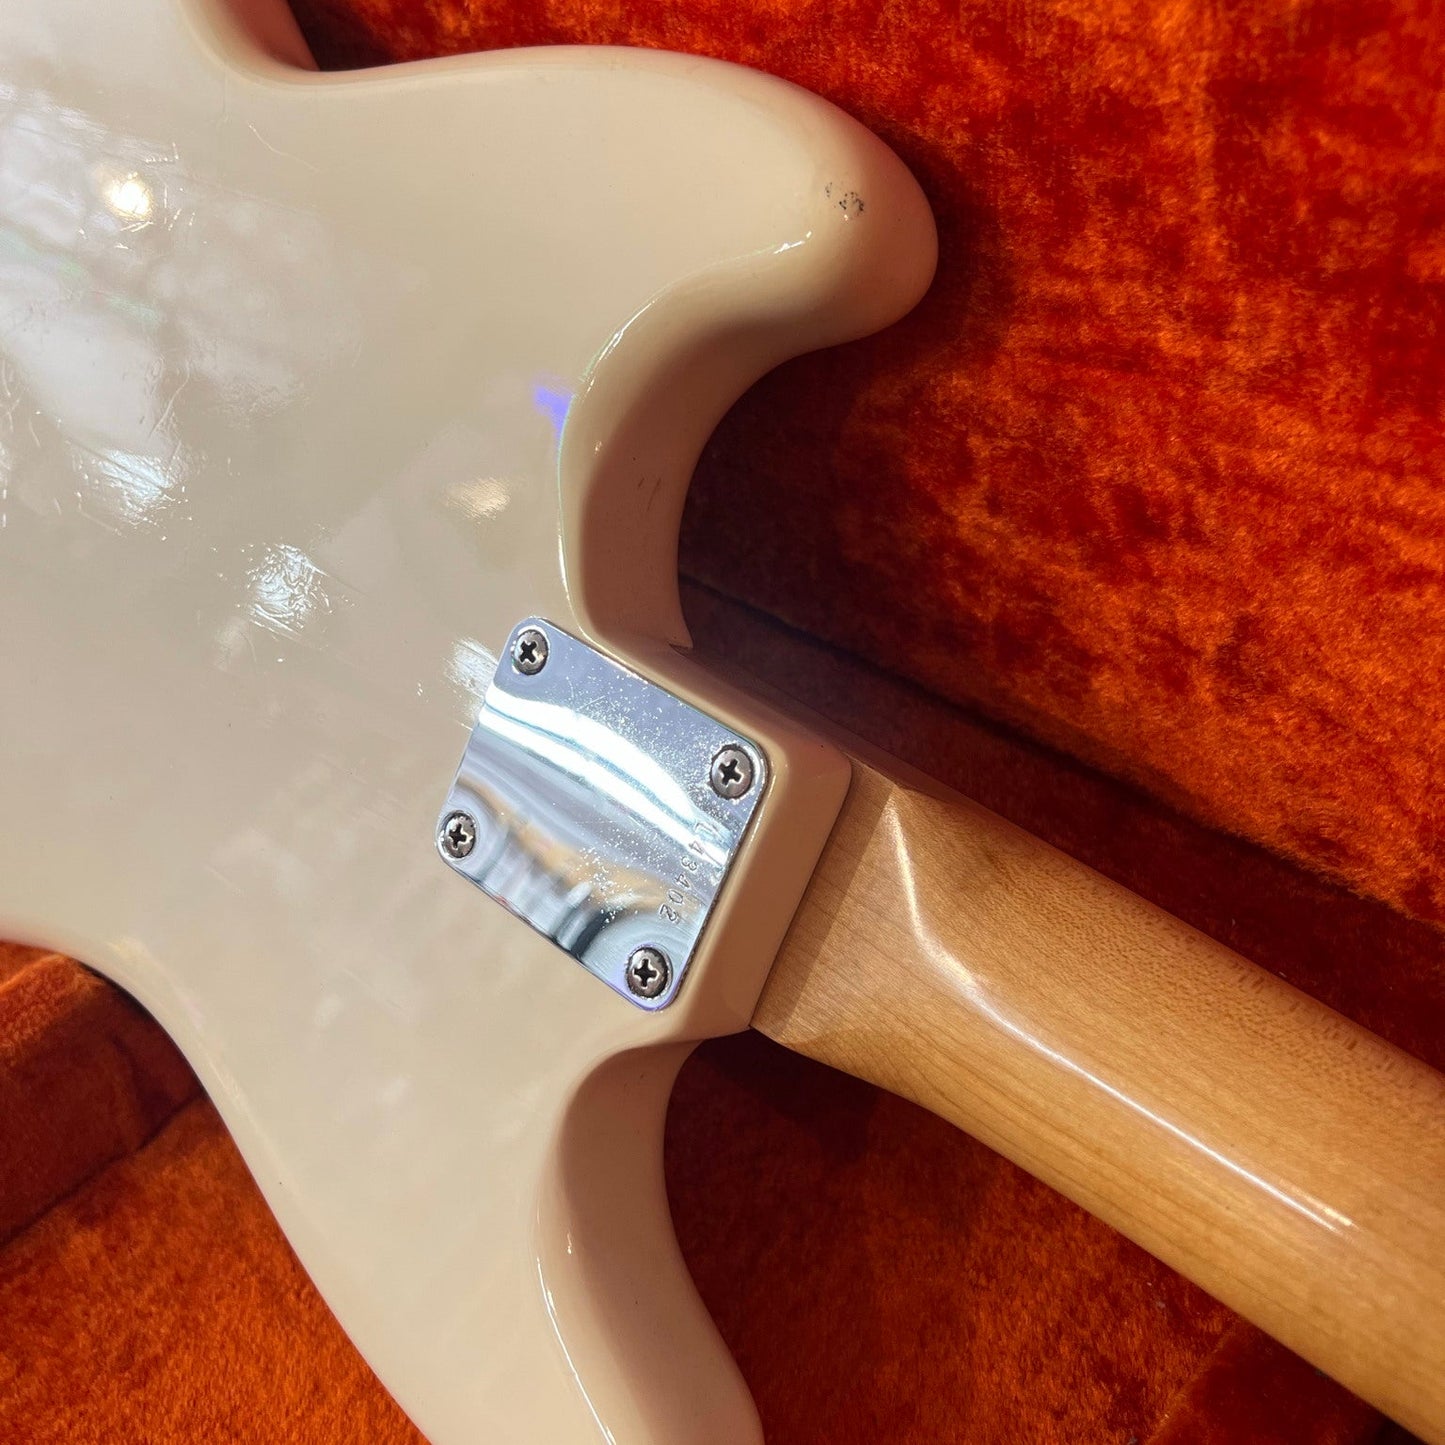 Fender Mustang Electric Guitar Original White 1964